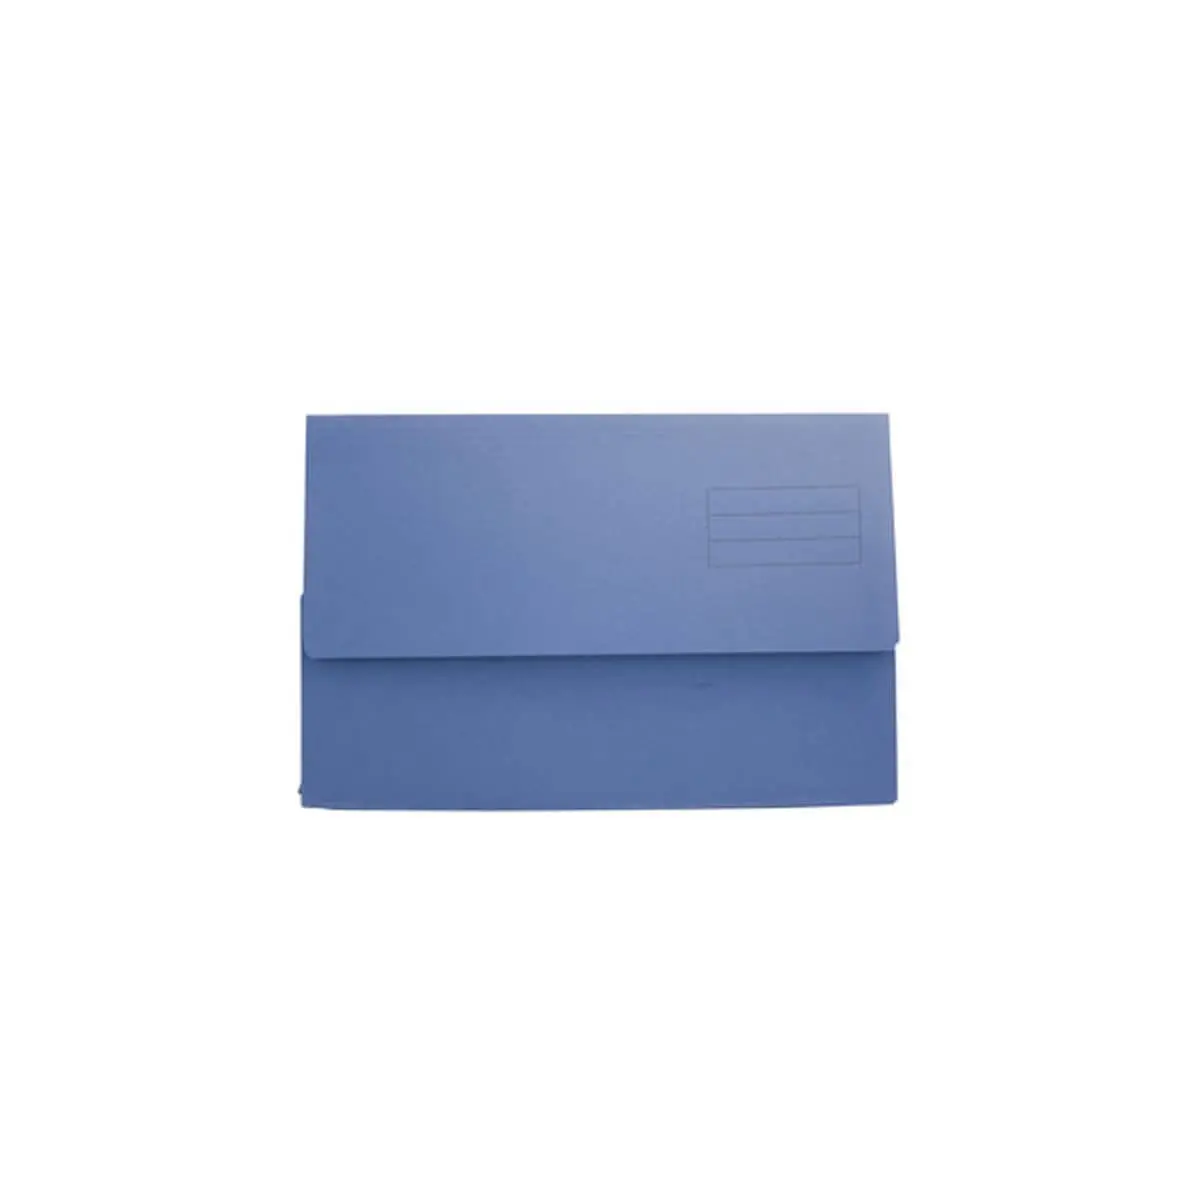 Chemise a poche 250g Folio bleu photo du produit